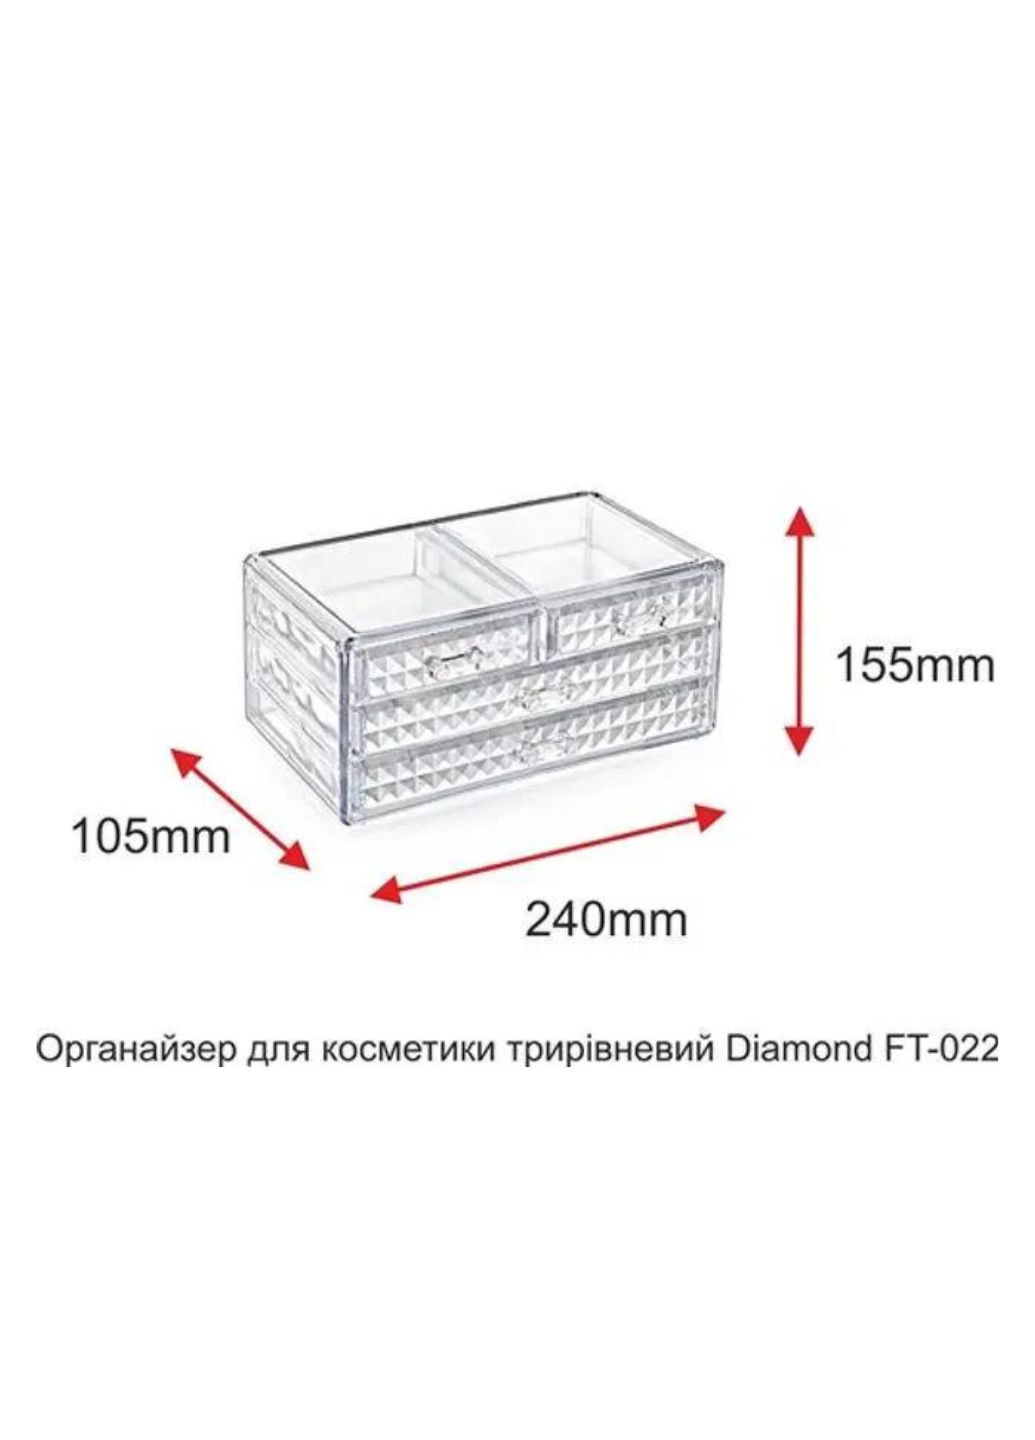 Органайзер для косметики трехуровневый Diamond FT-022 155х240х105 мм BoxUp (268665265)